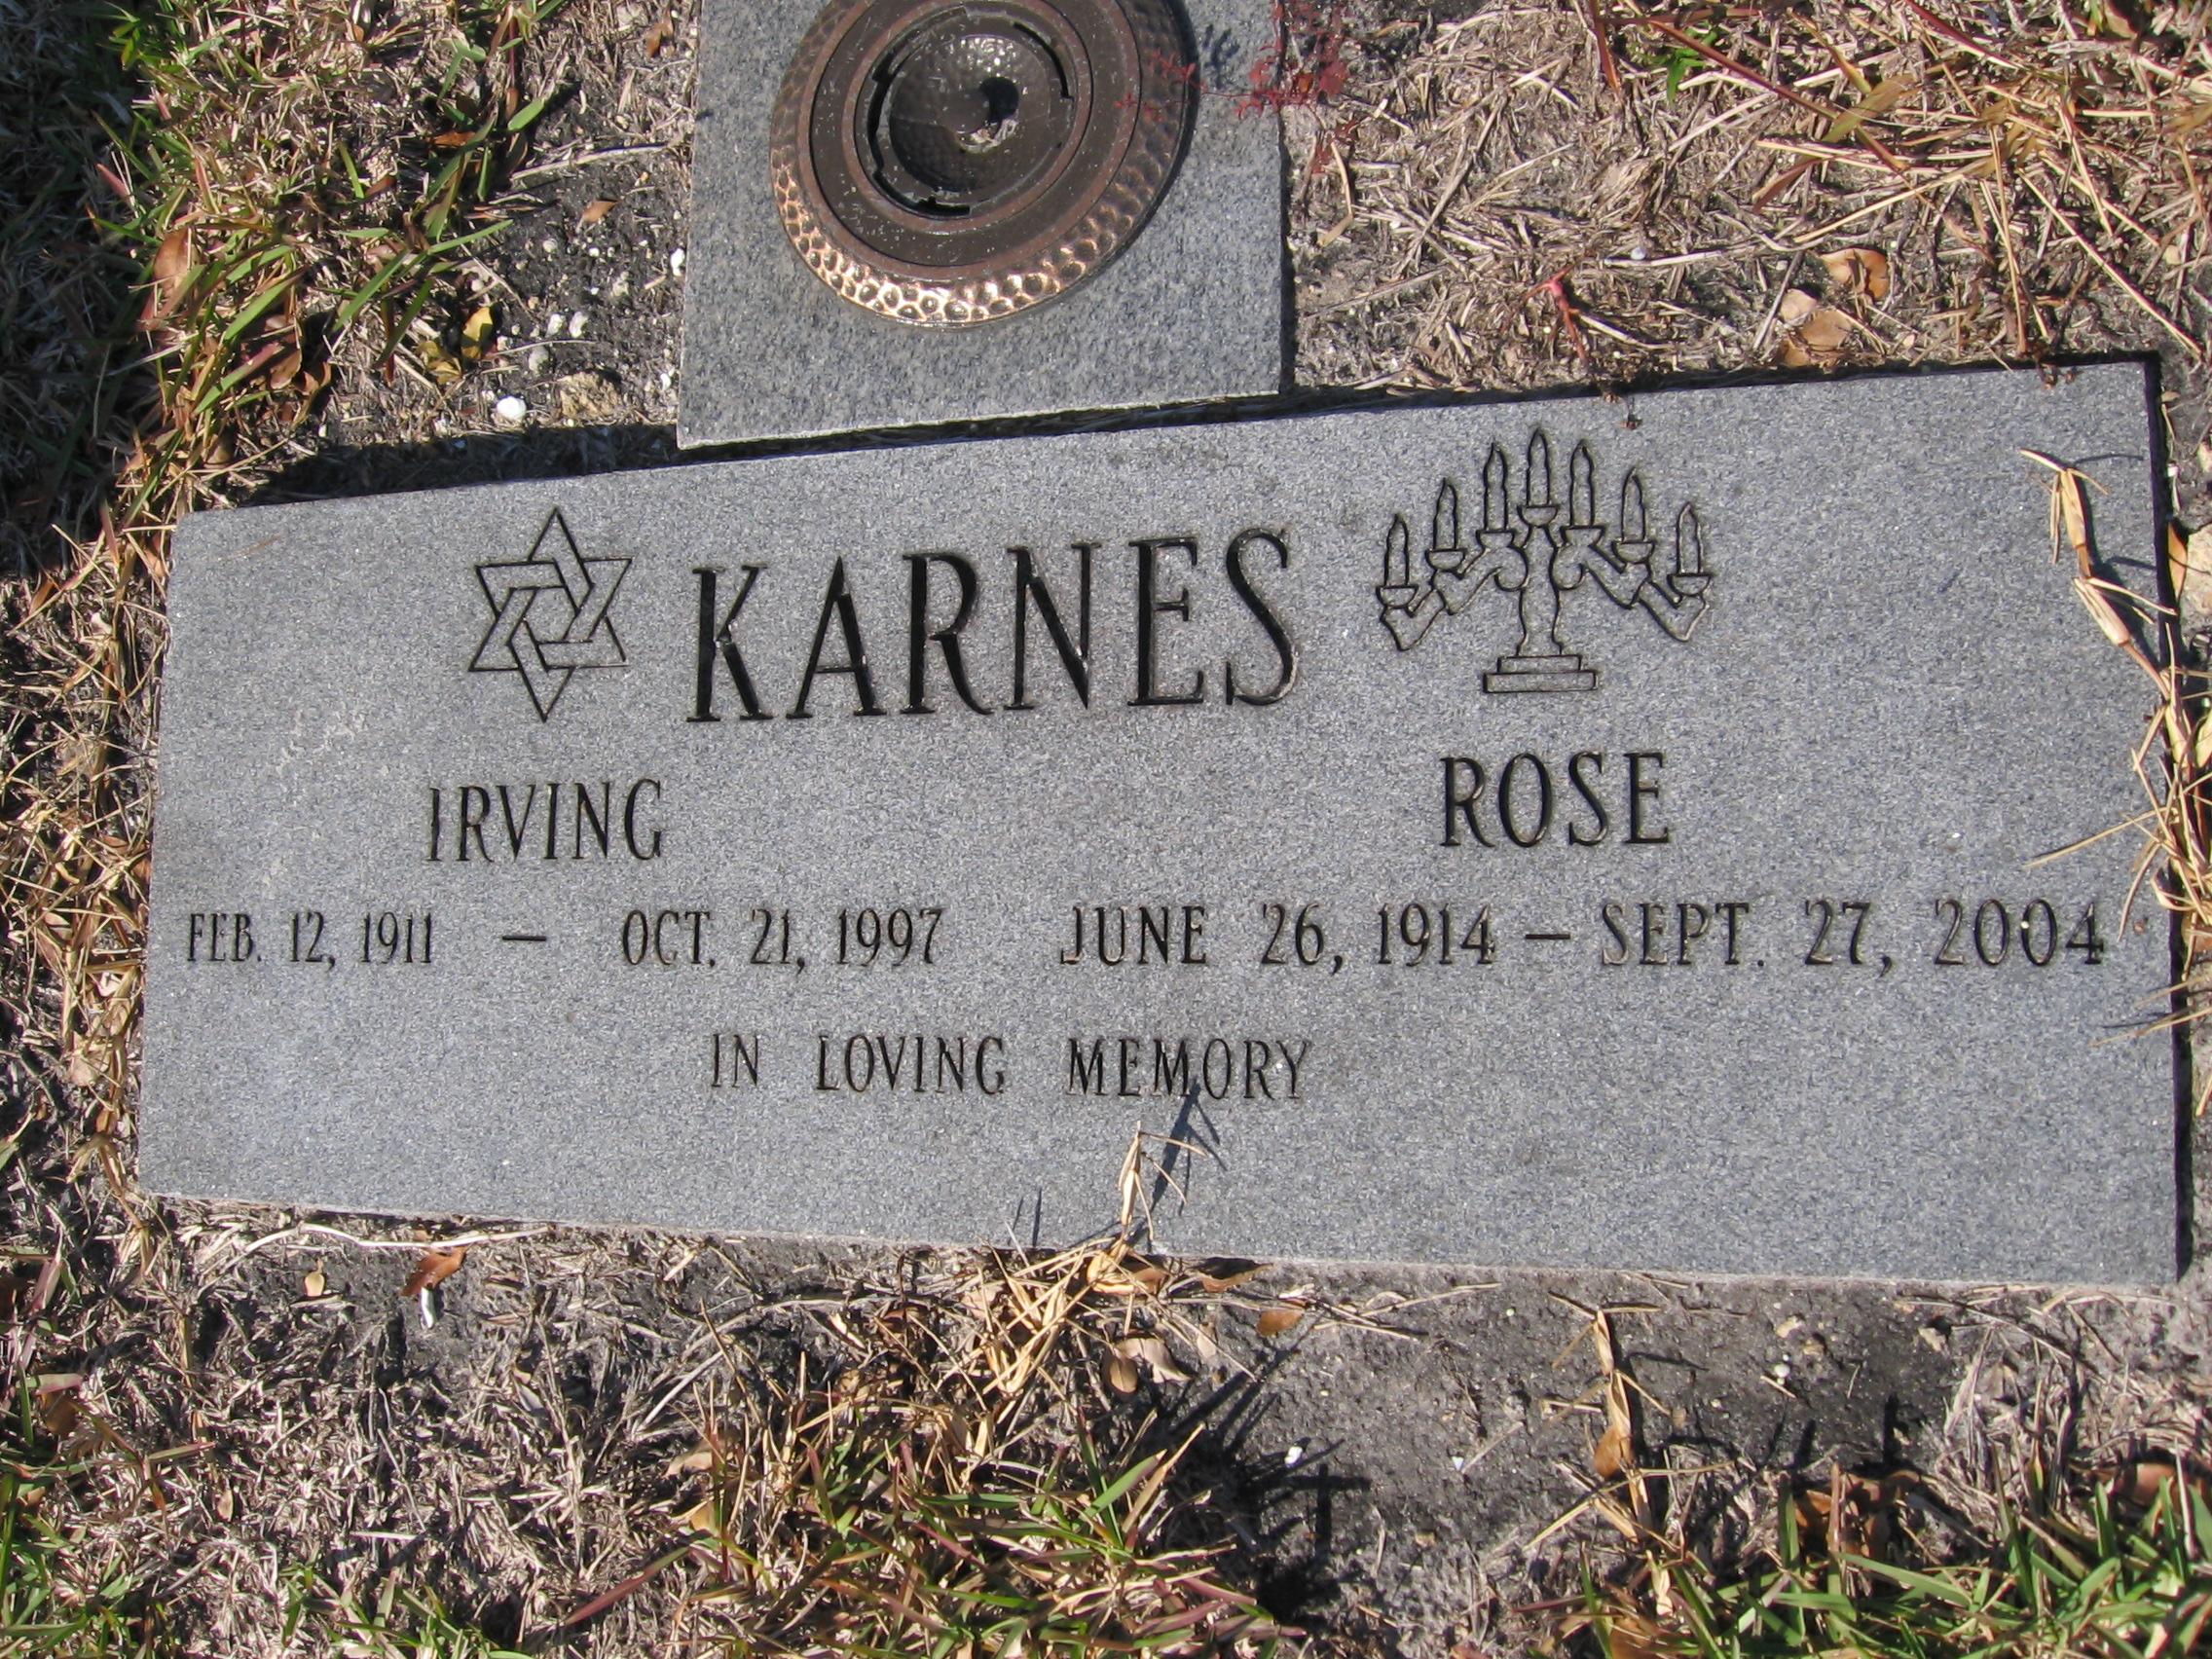 Irving Karnes